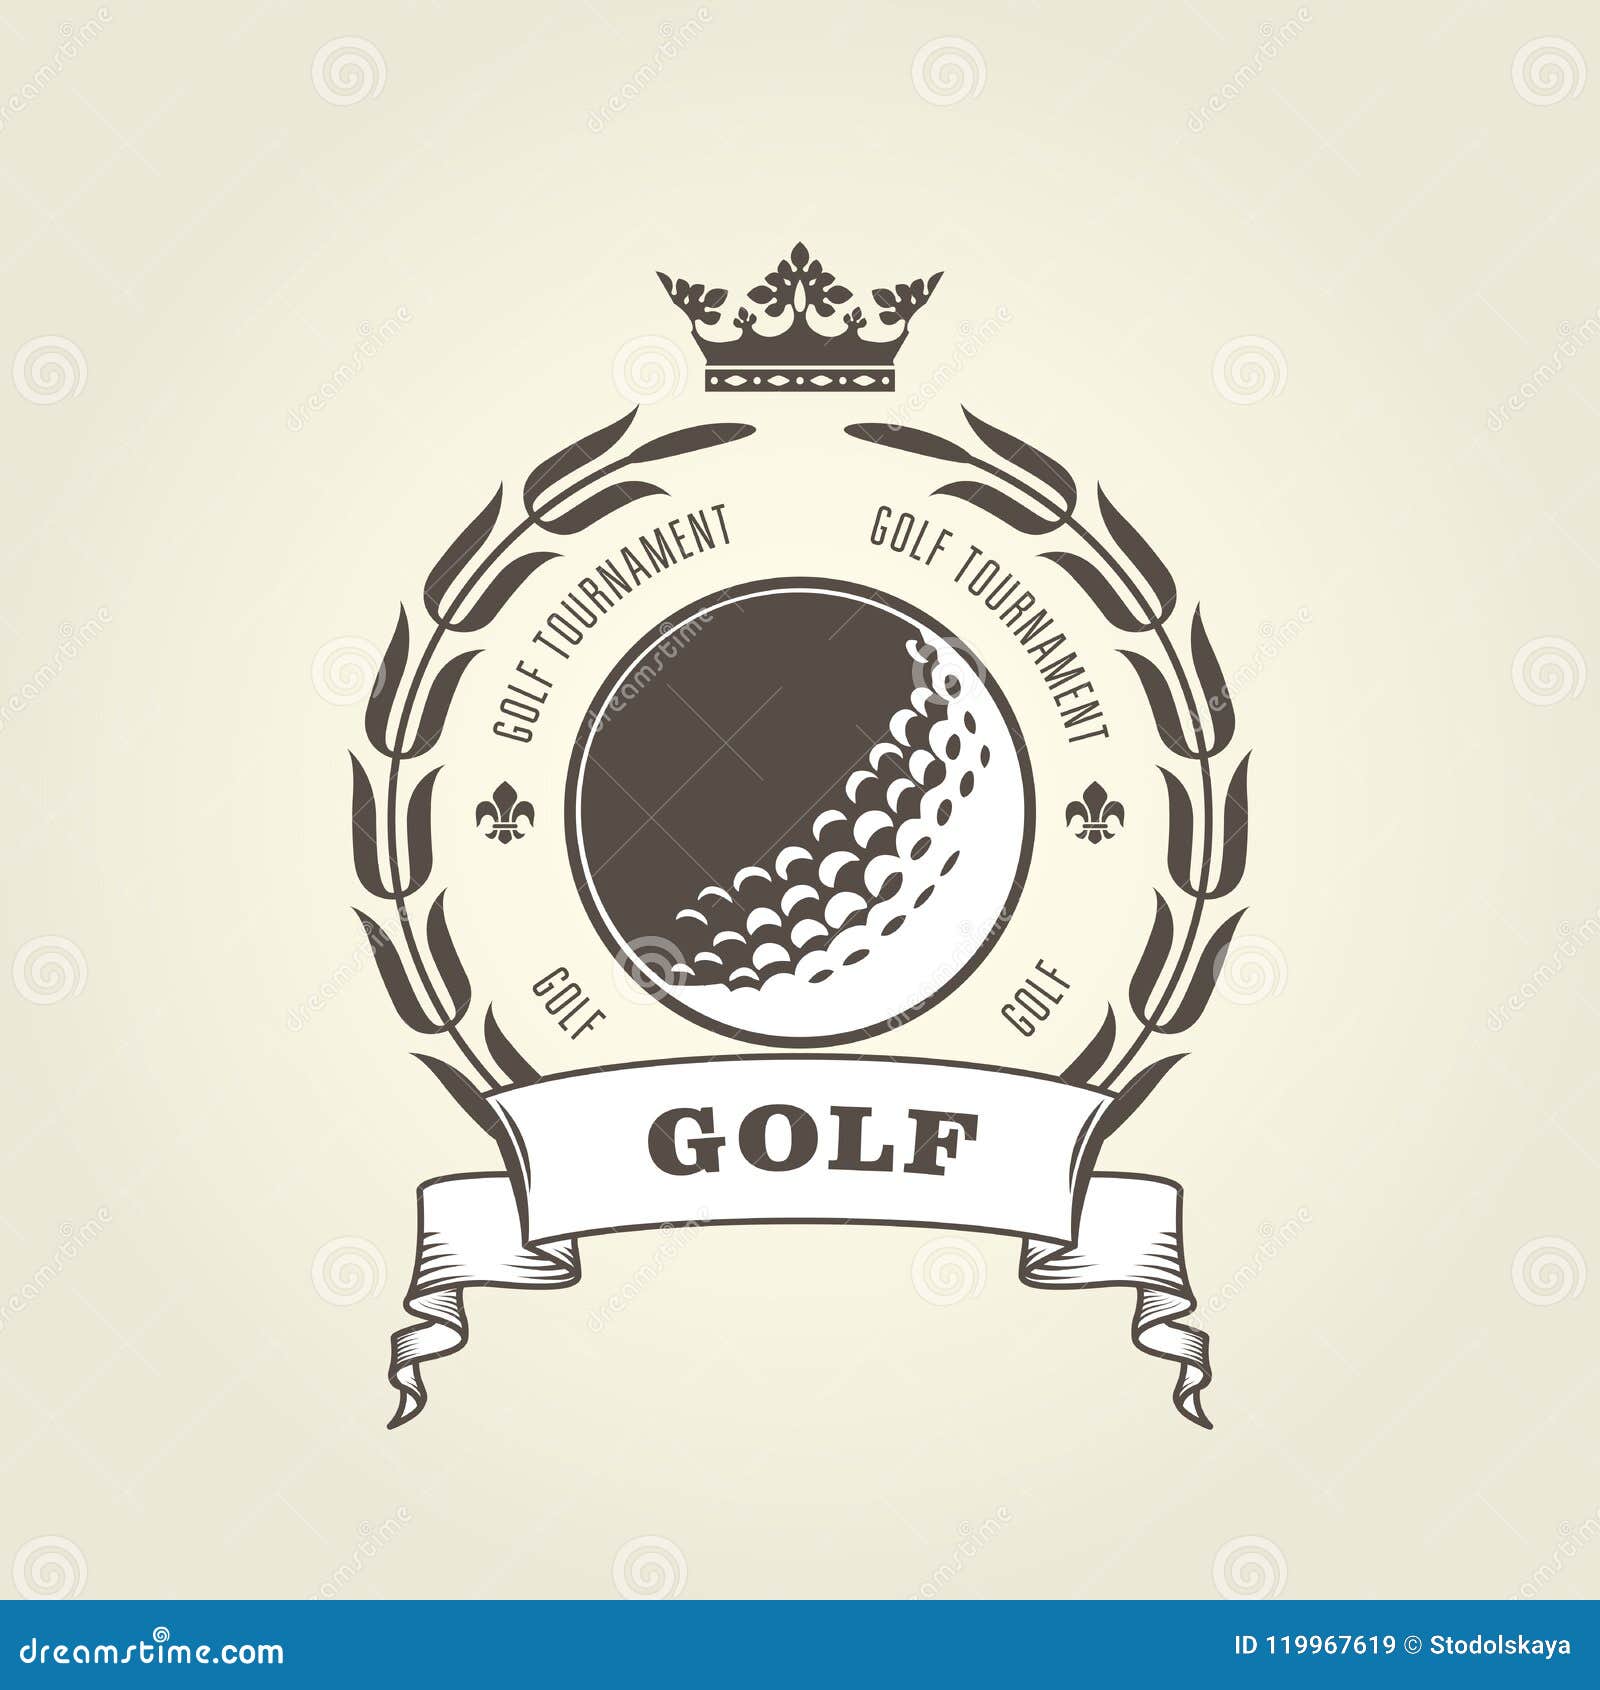 golf tournament emblem or blazon - golf ball